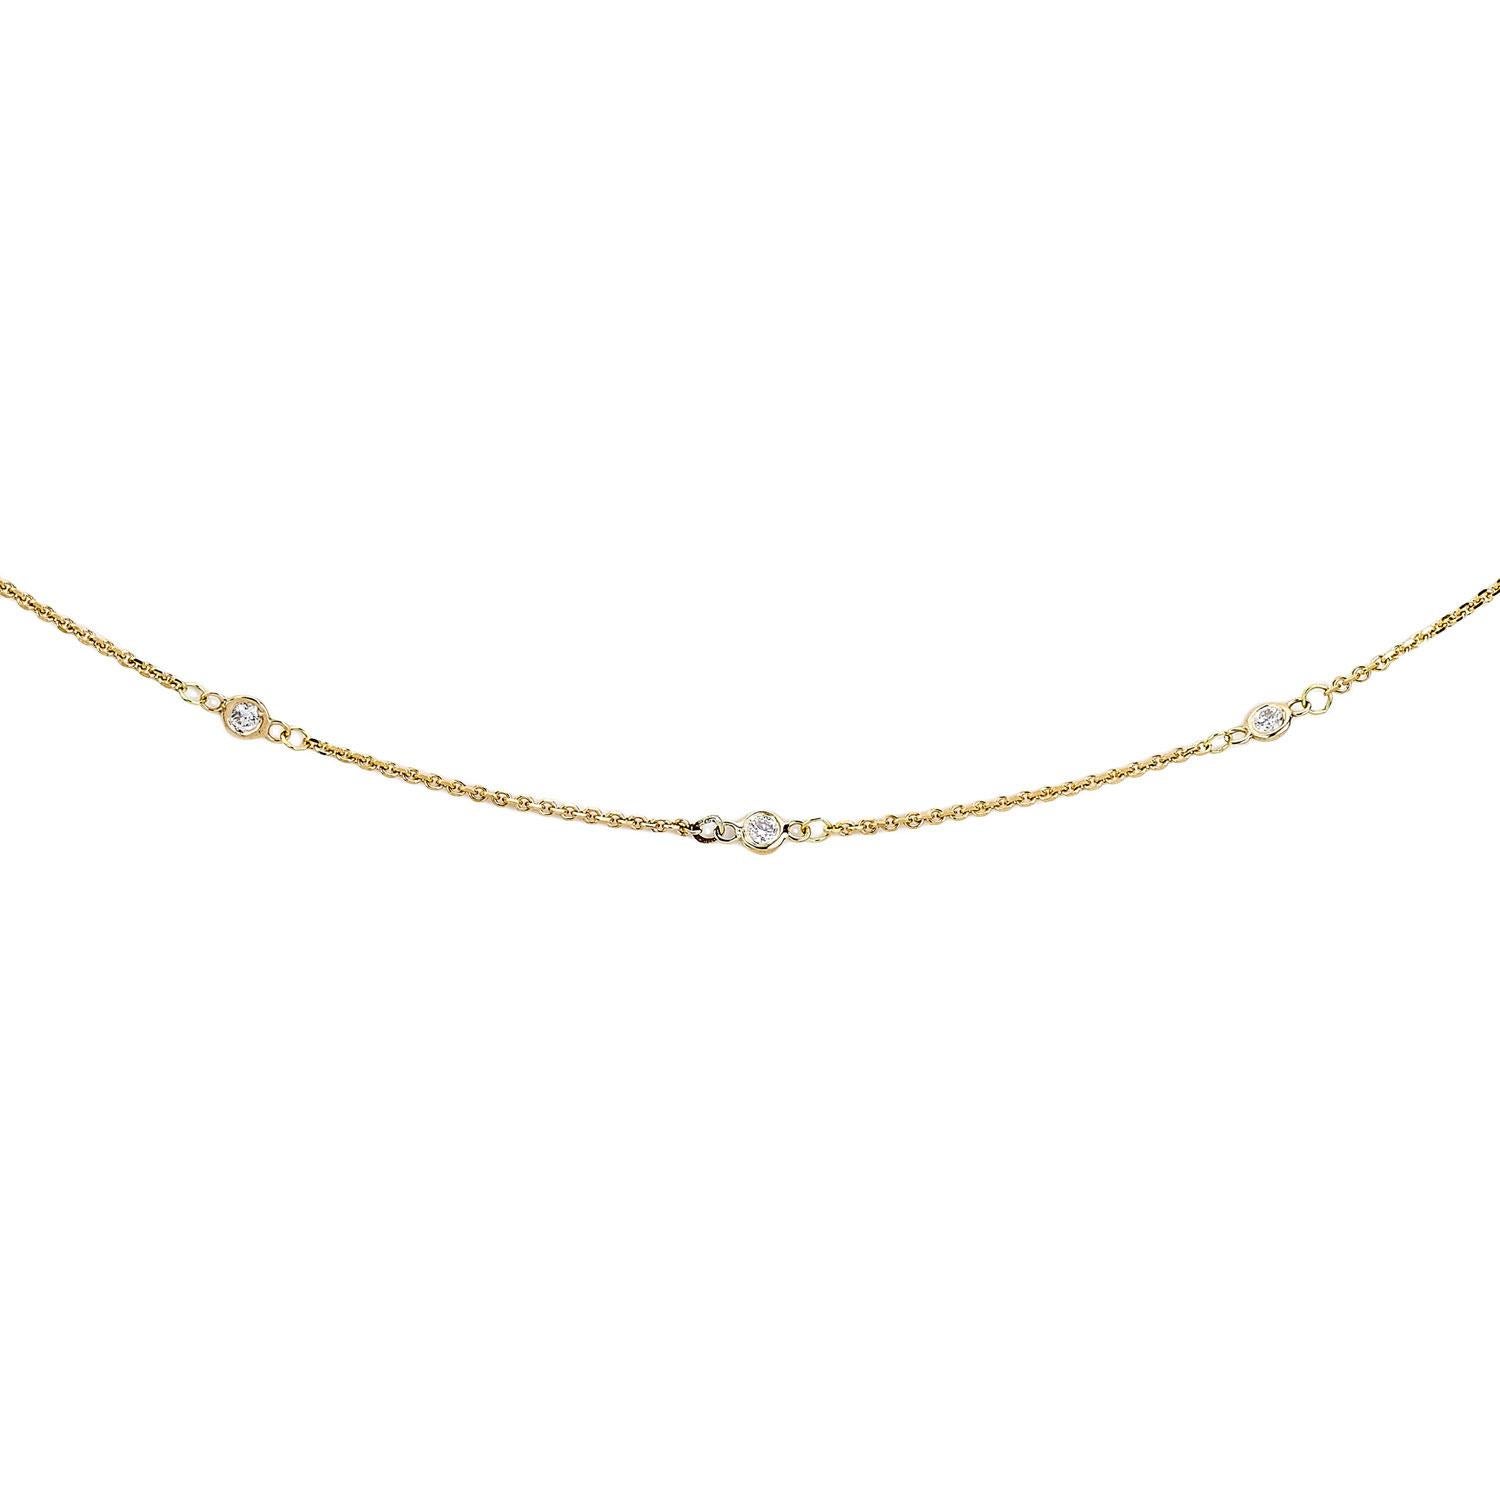 Offrez-vous ou offrez à la personne de votre choix l'élégance de ce collier en or 14 carats et diamants, qui comporte 12 diamants régulièrement espacés. Choisissez parmi plusieurs couleurs d'or pour compléter les diamants. La finition polie de l'or